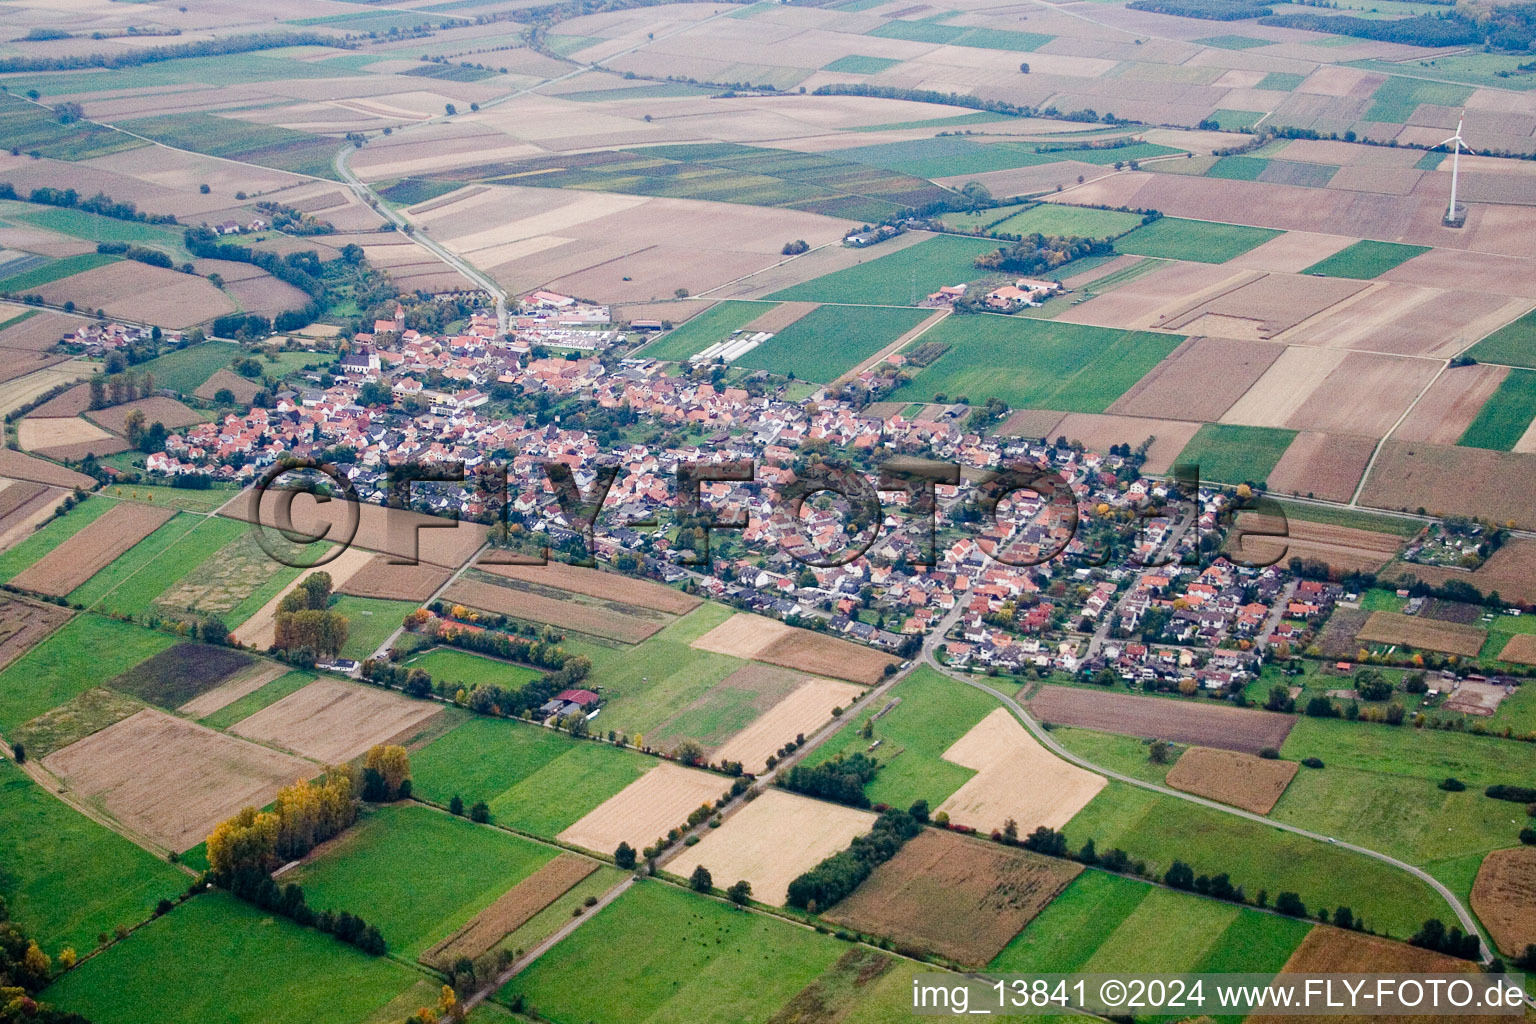 Vue aérienne de Champs agricoles et surfaces utilisables à Minfeld dans le département Rhénanie-Palatinat, Allemagne